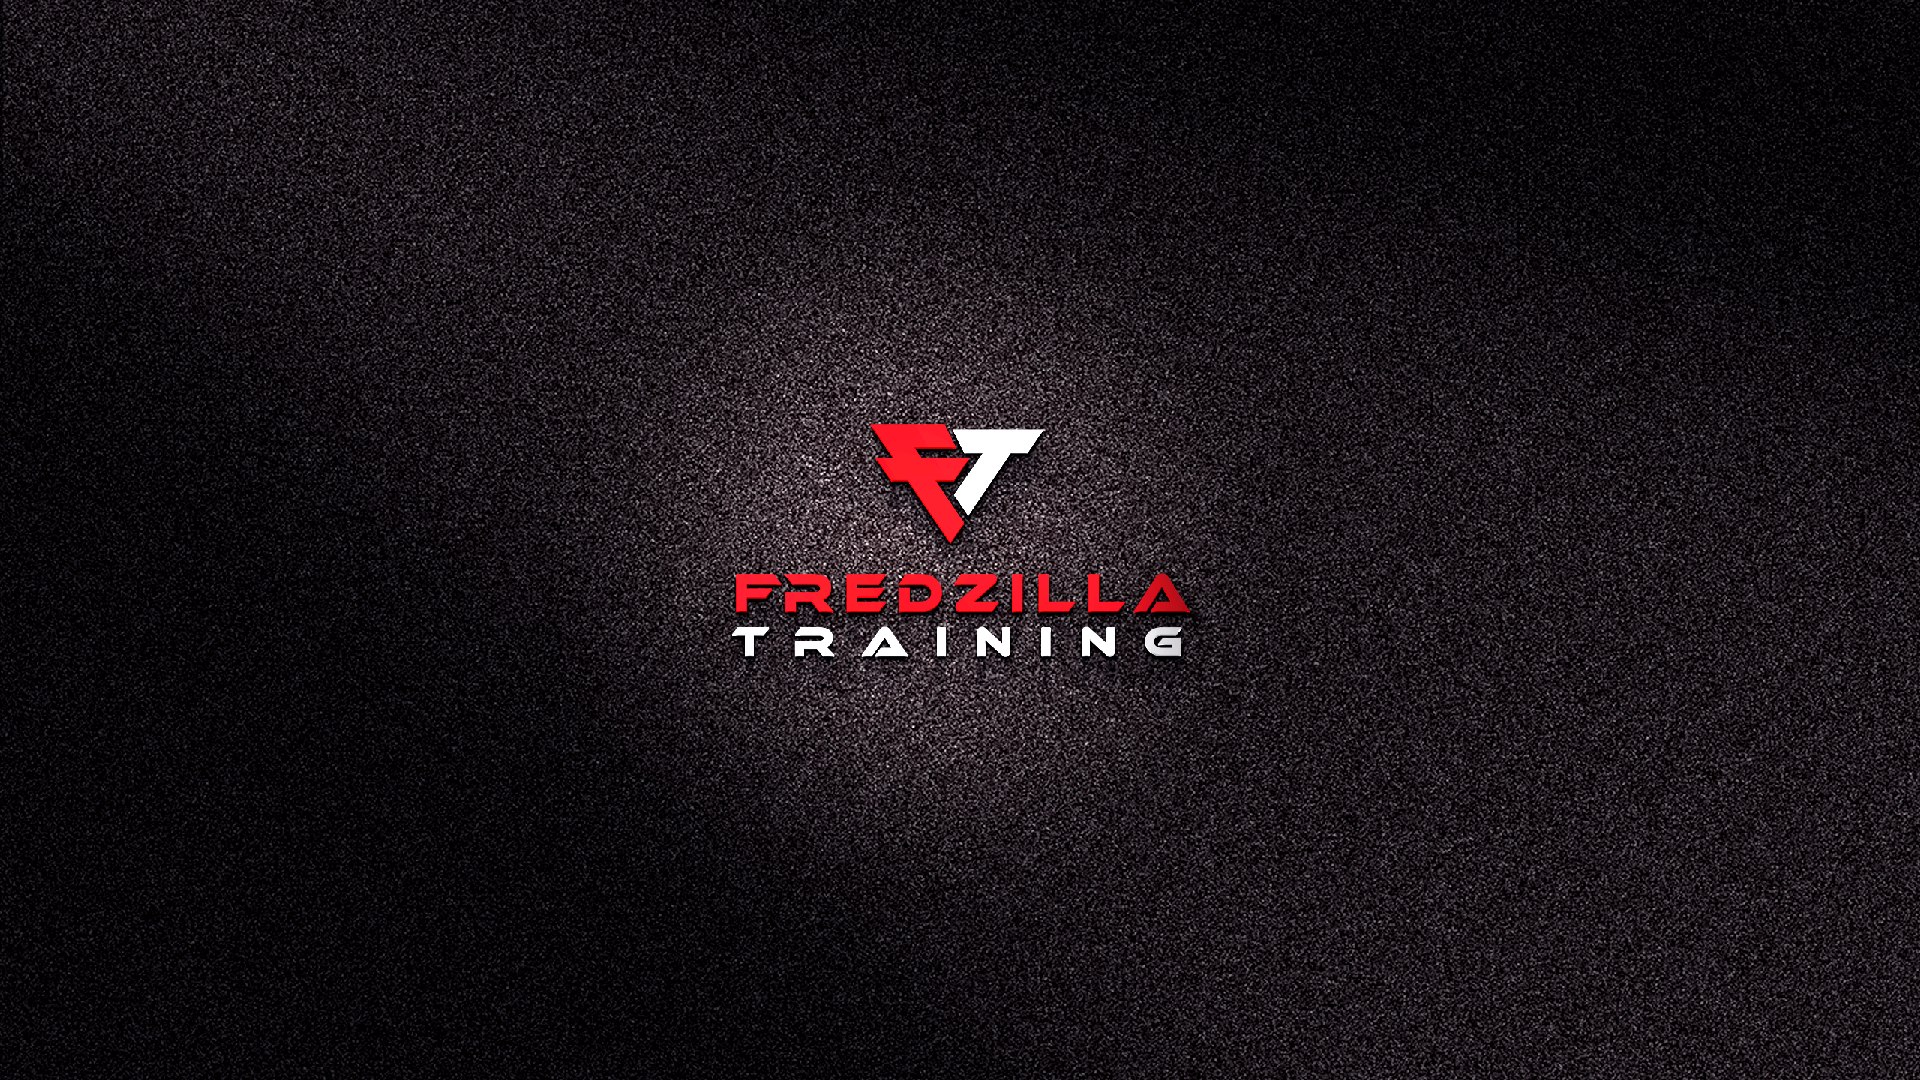 Fredzilla Training